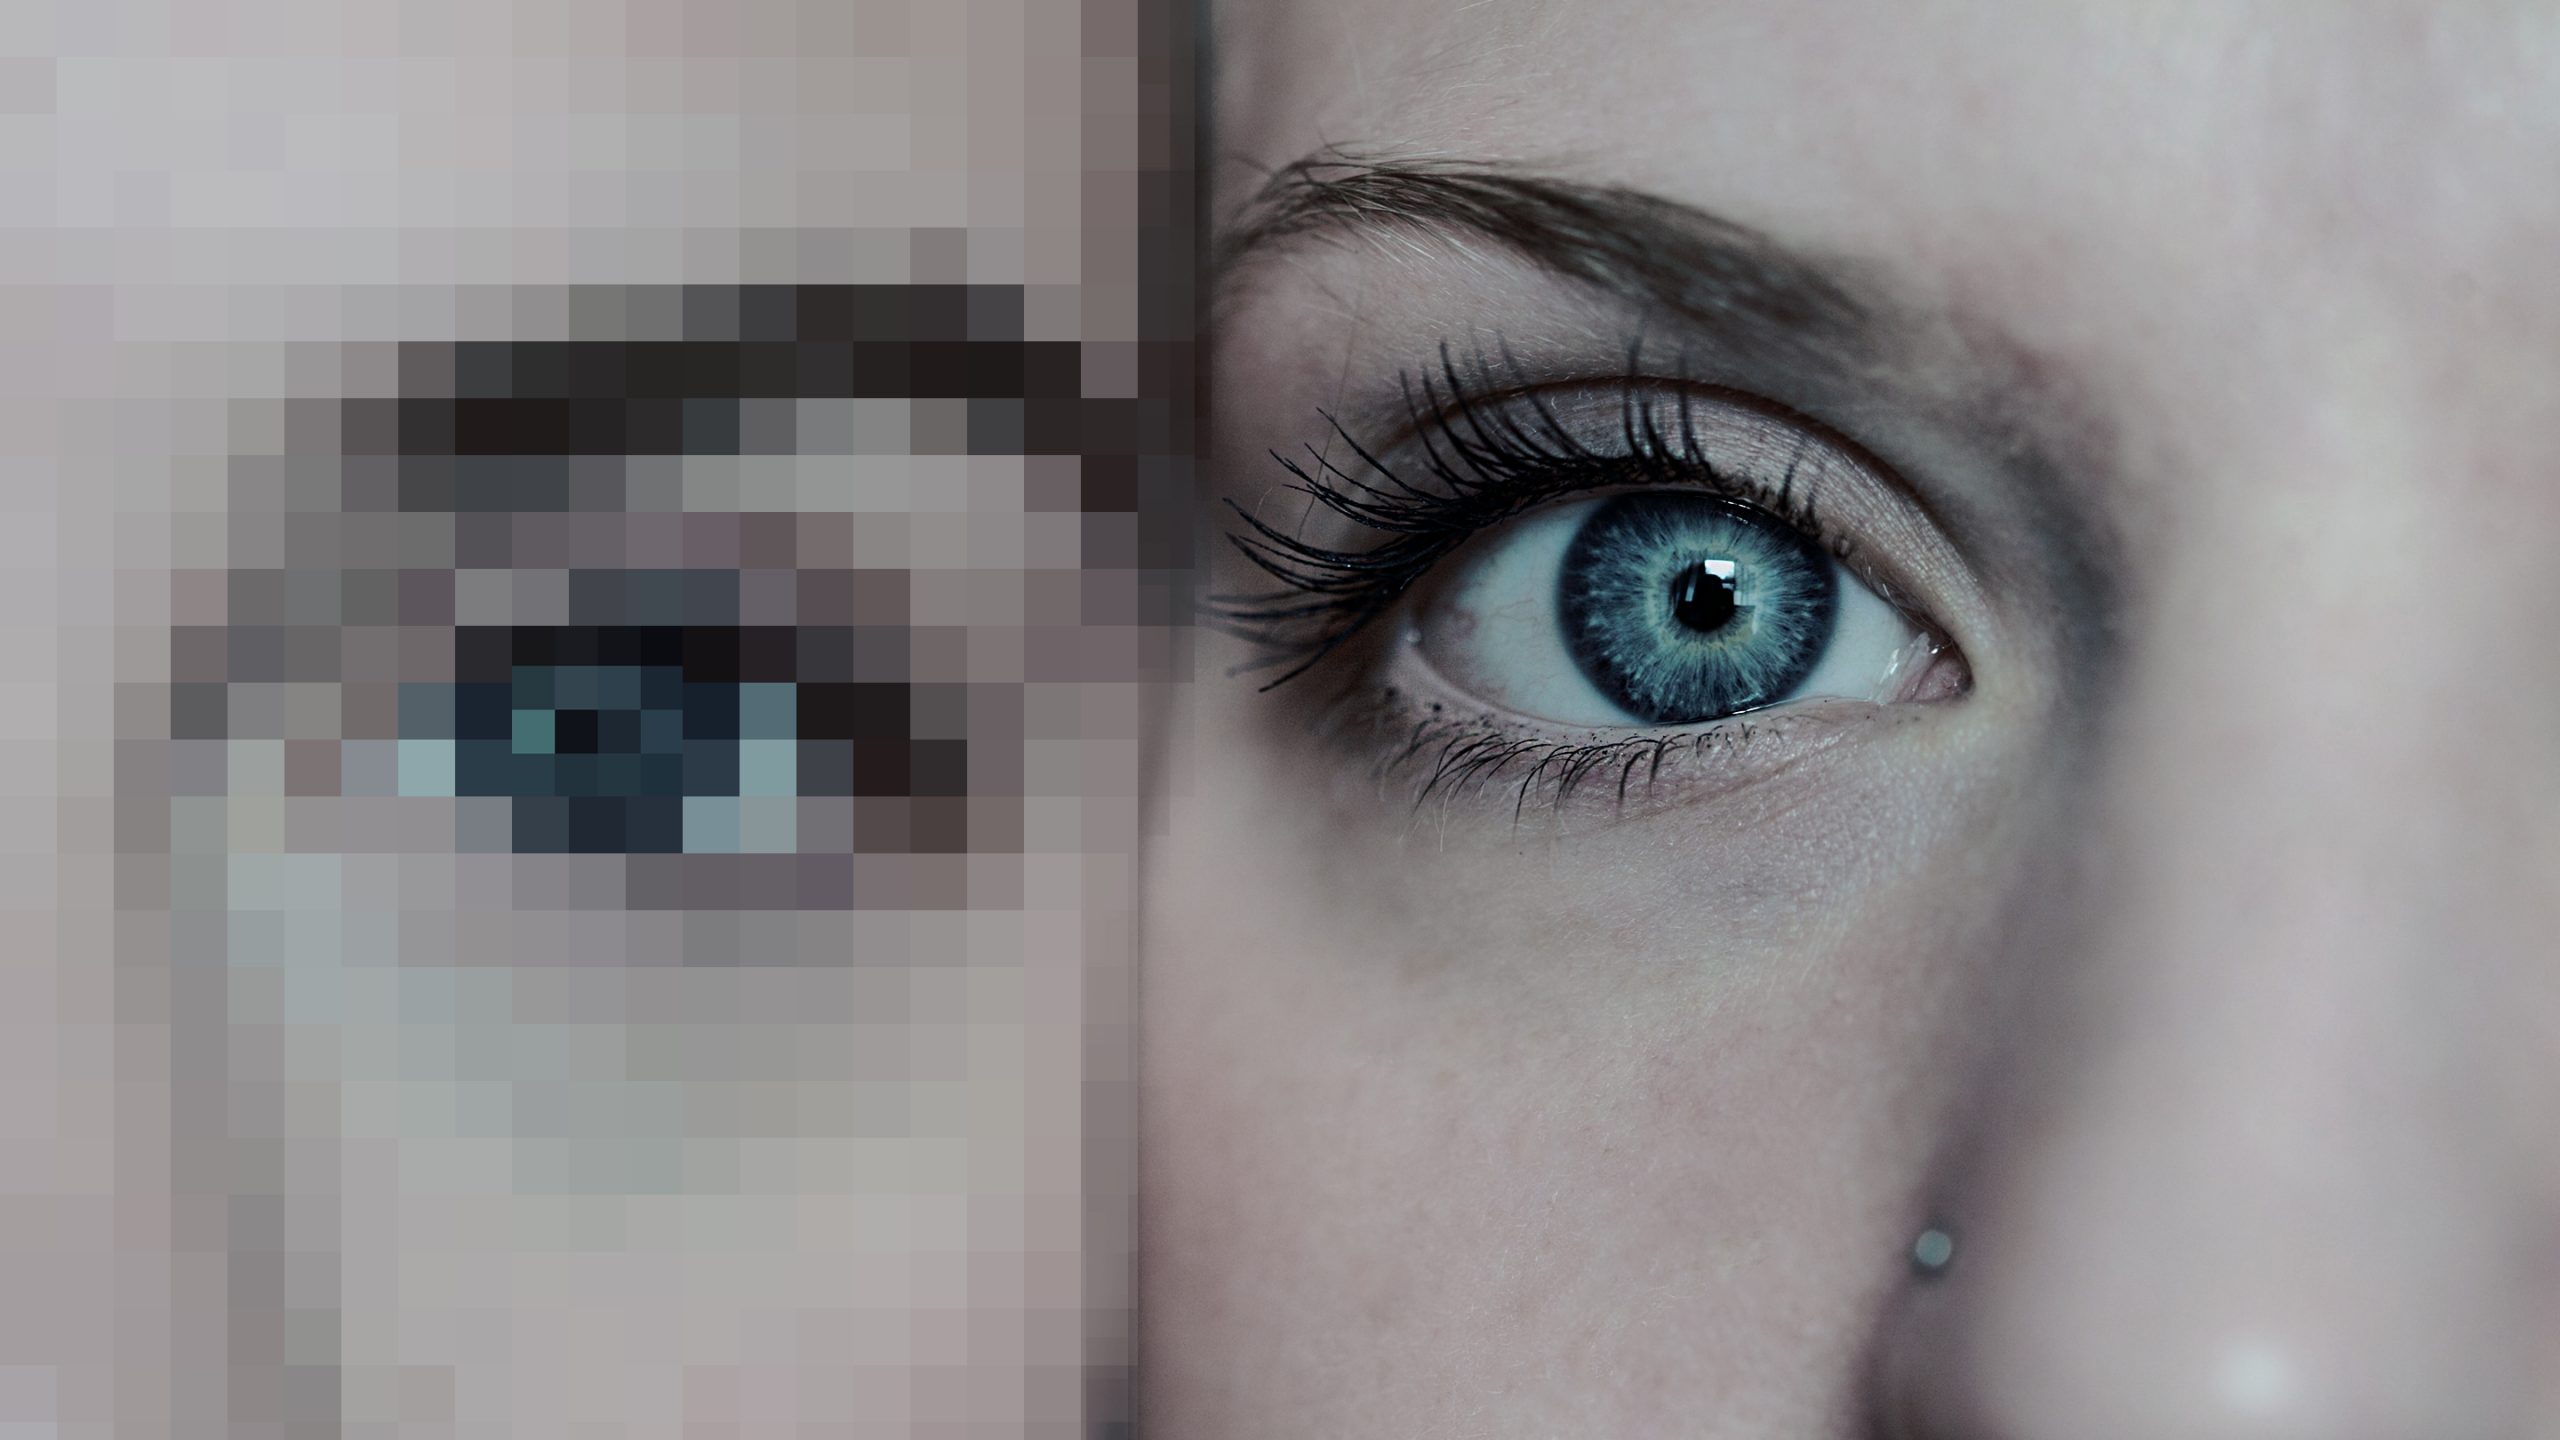 Abschnitt von dem Augenbereich zweier Gesichter, eins davon ist verpixelt